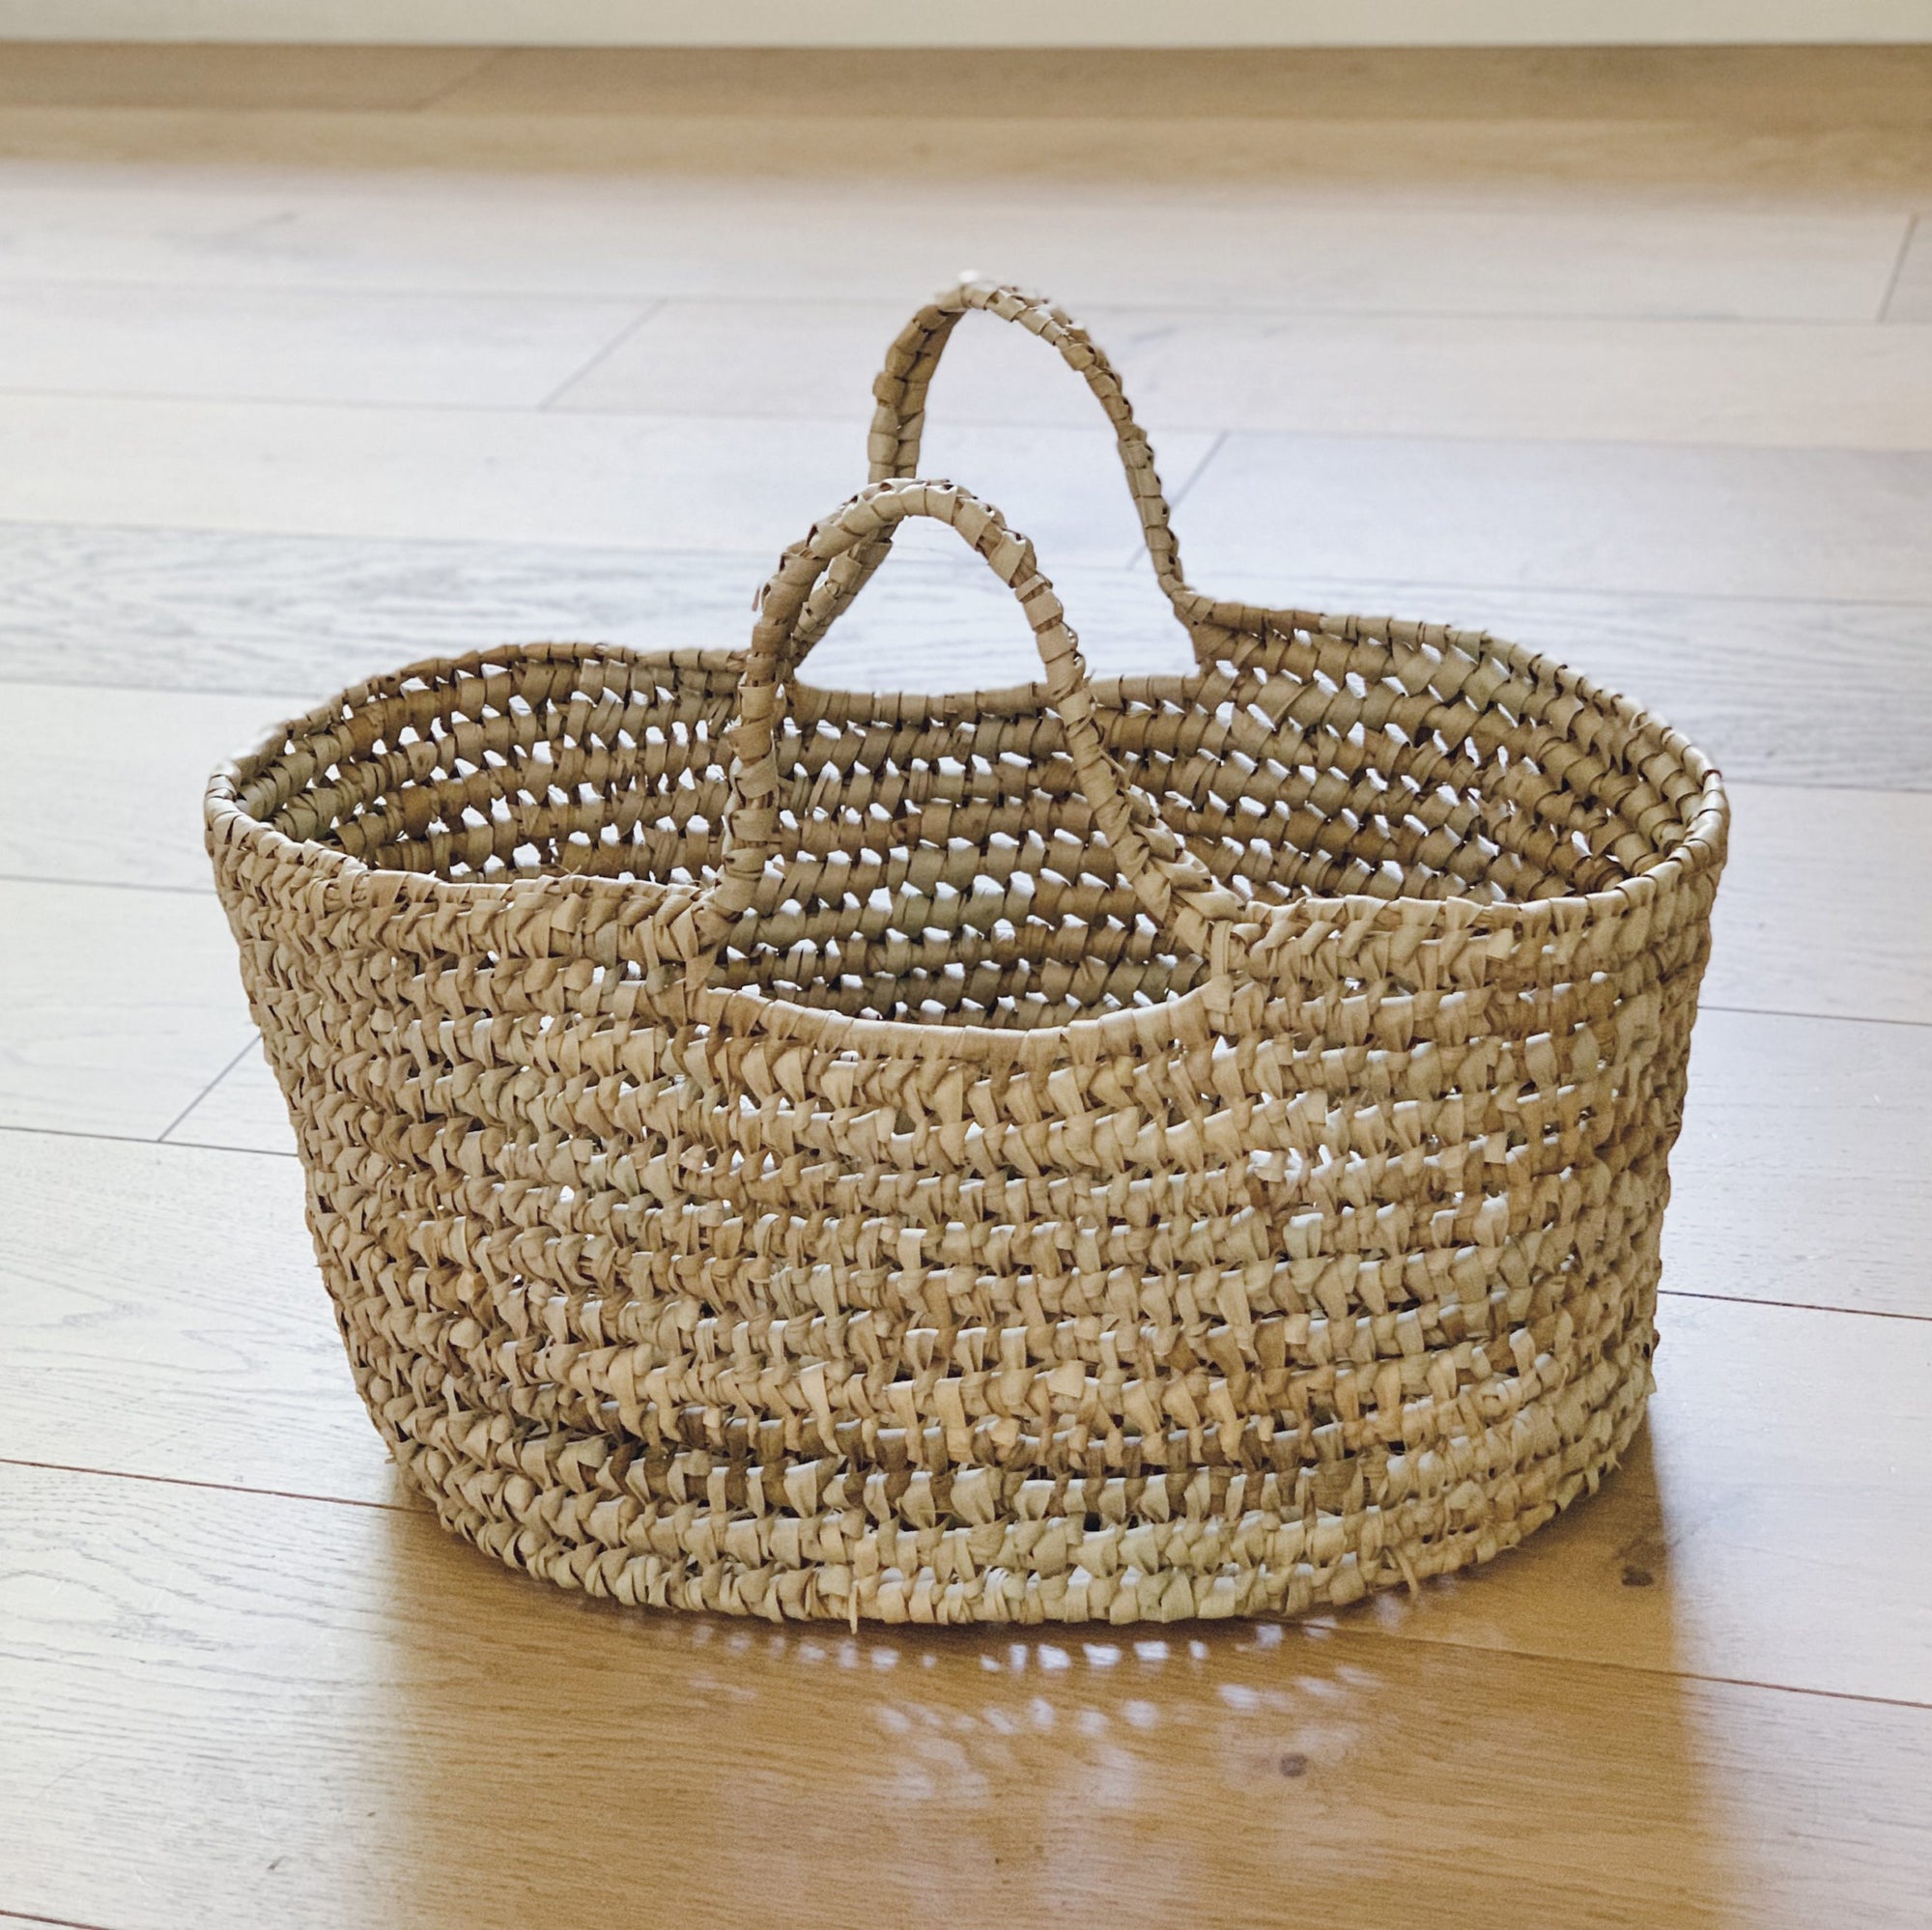 Open Weave Baskets